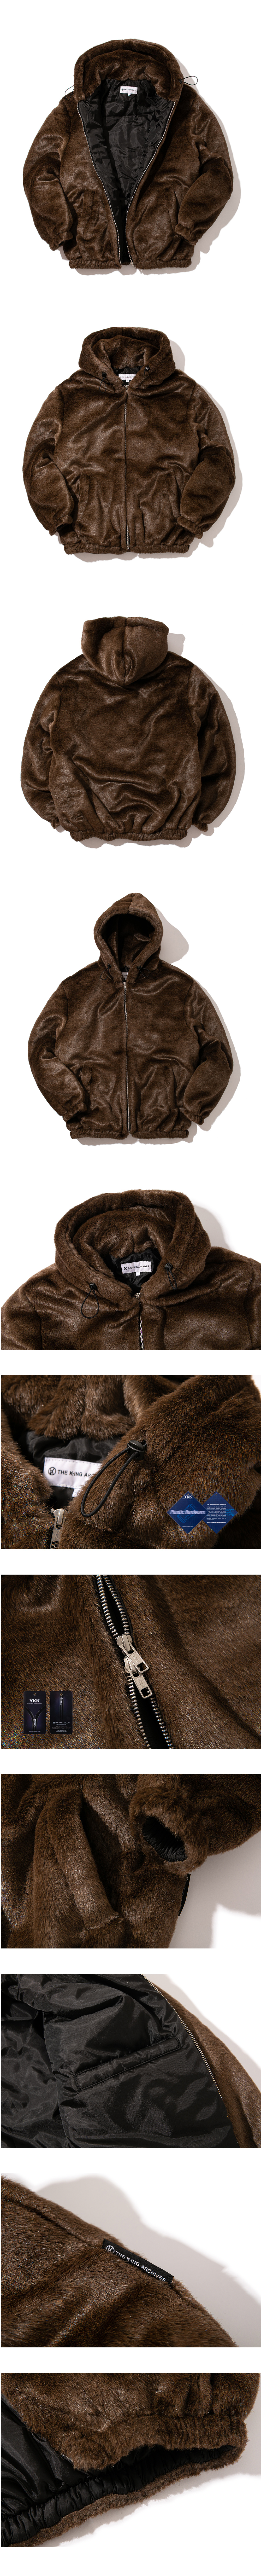 Heavy Fur Jacket 001 (Brown)